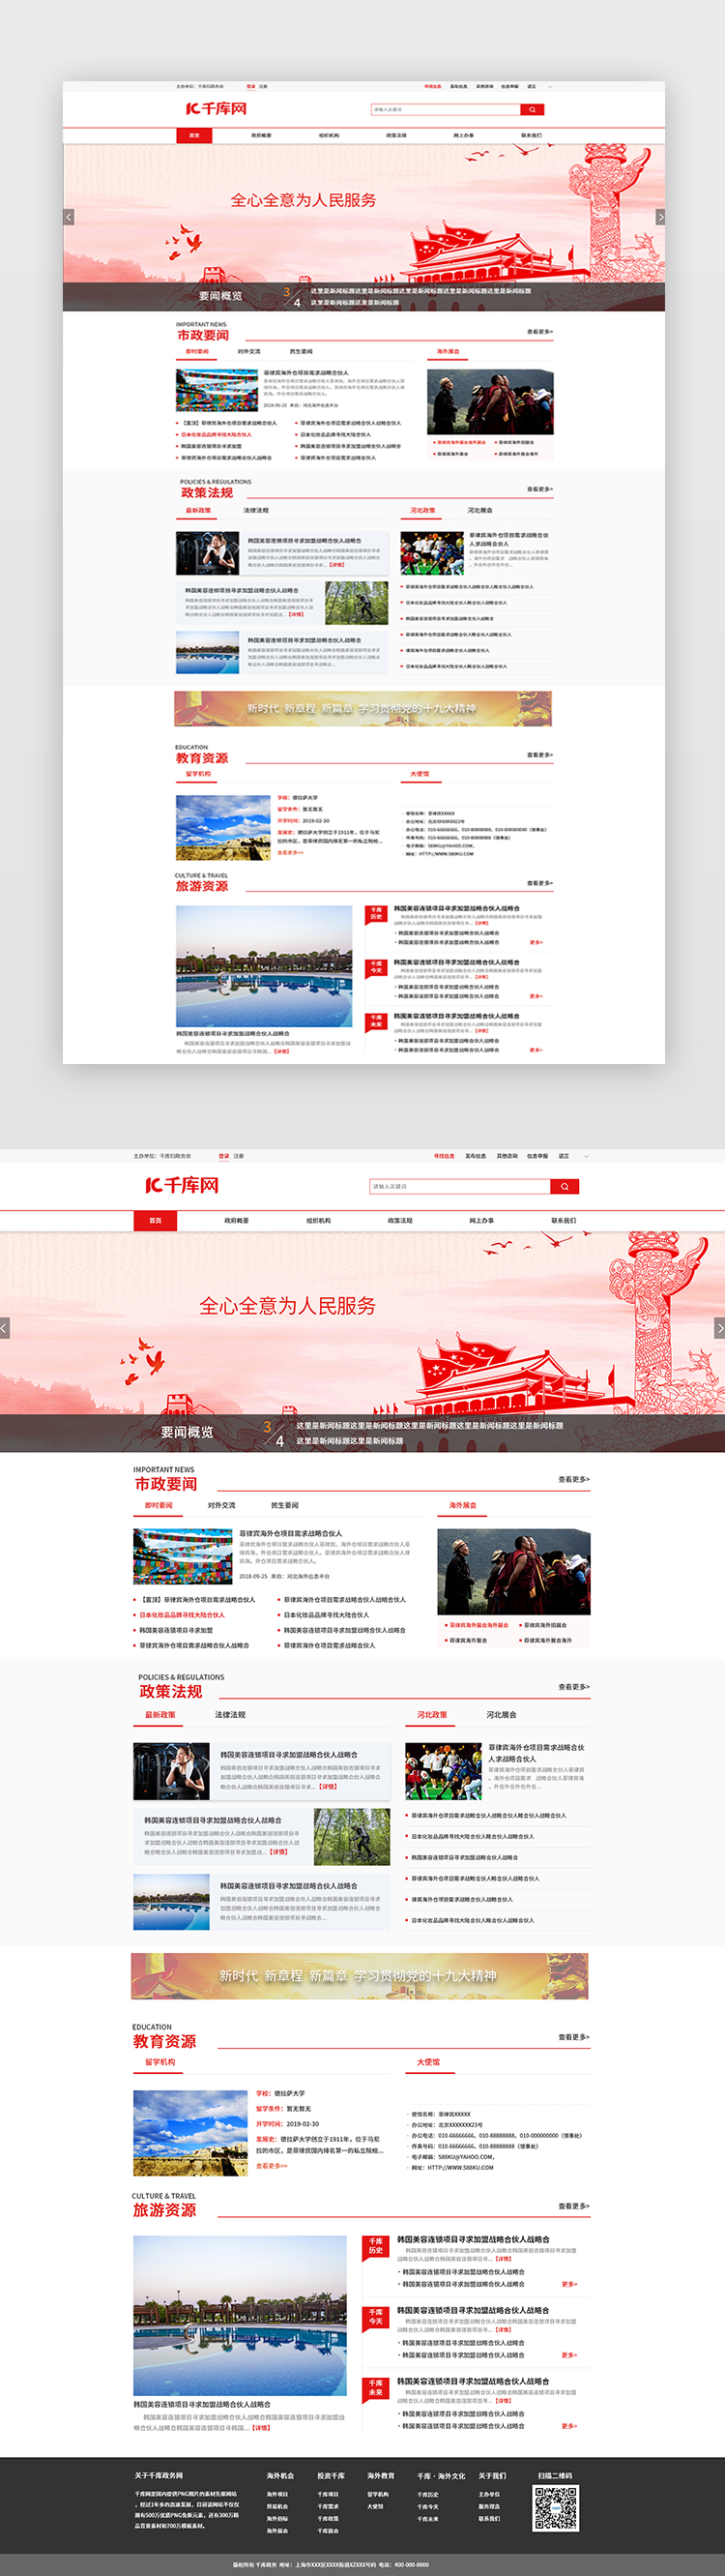 红色简约大气党政政府网站首页图片